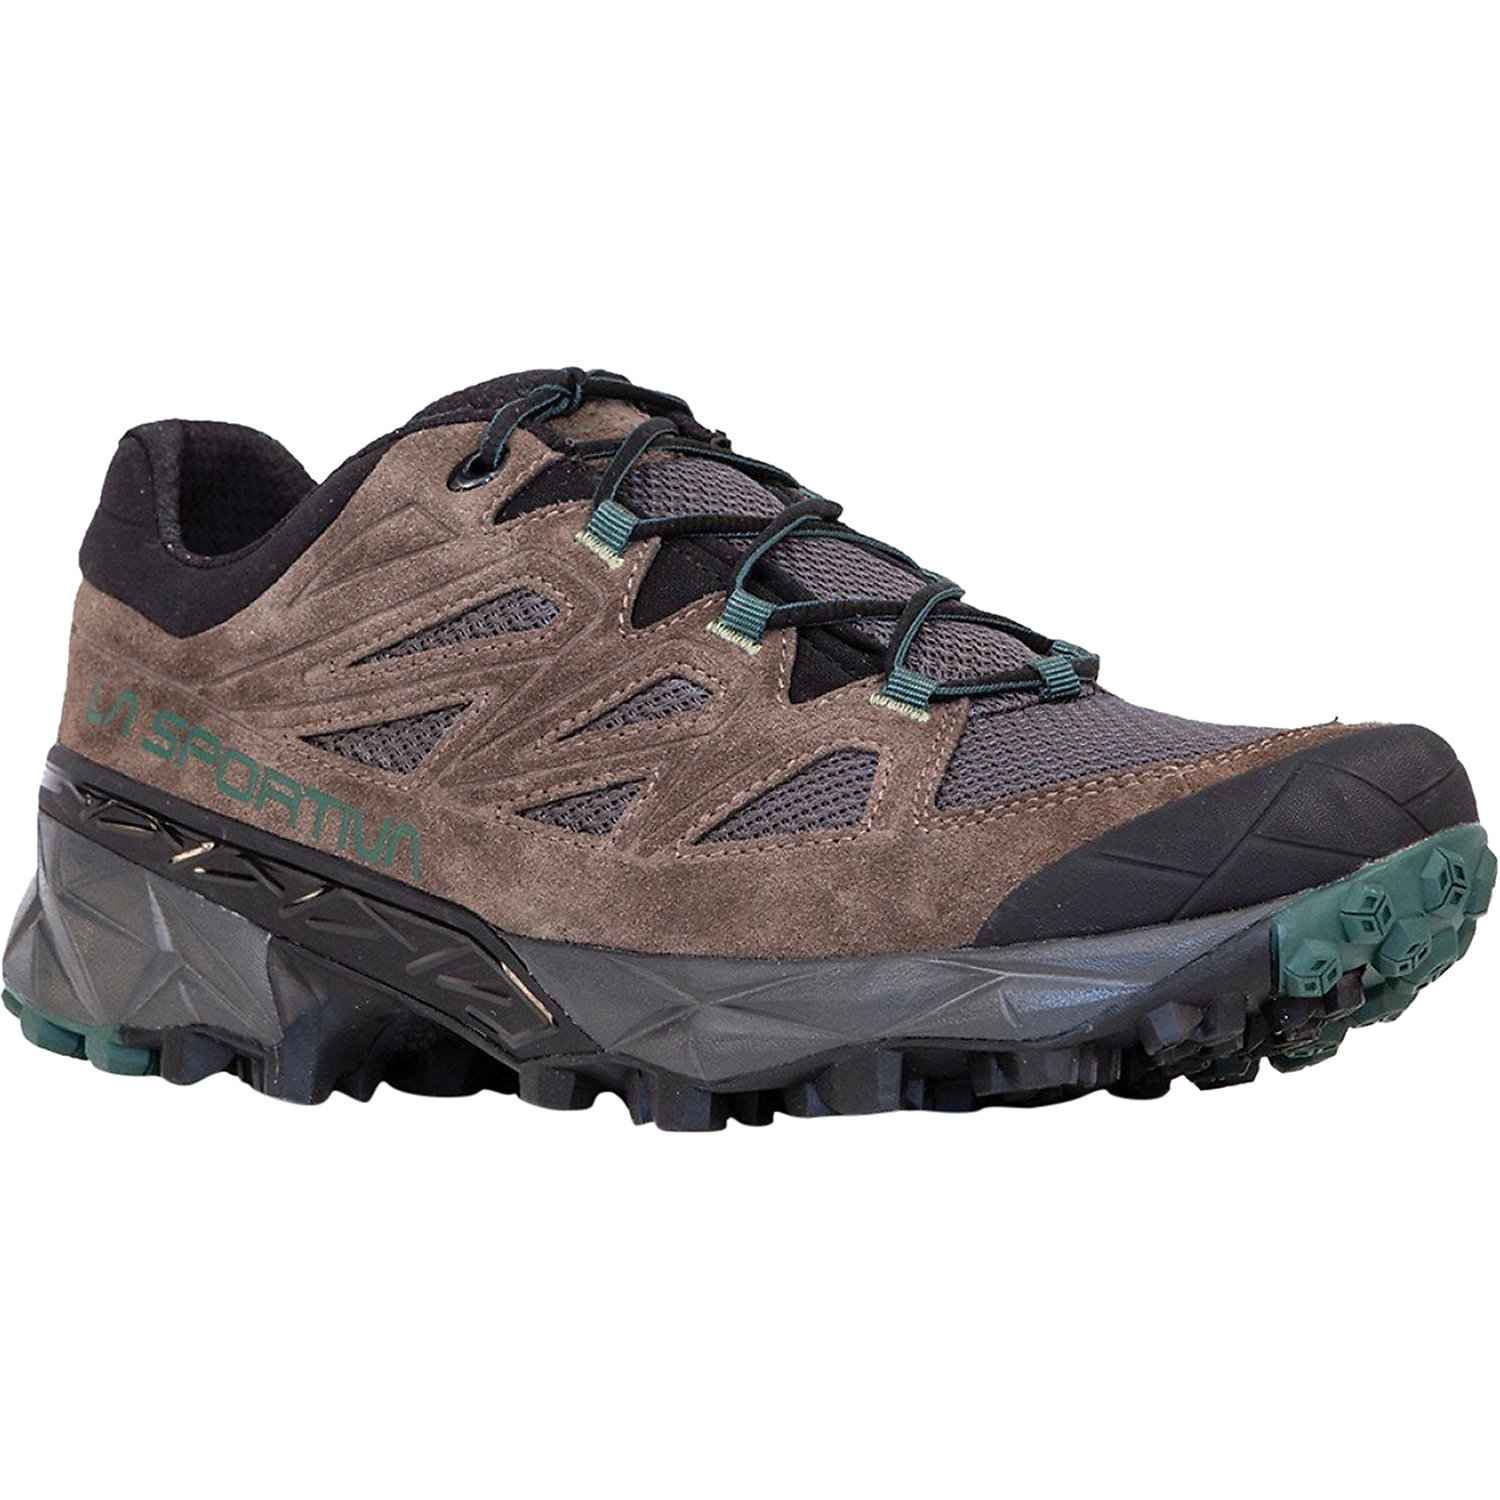 Hiking Shoes & Boots Marmot Men’s Trail Shoe Size 10 Men's